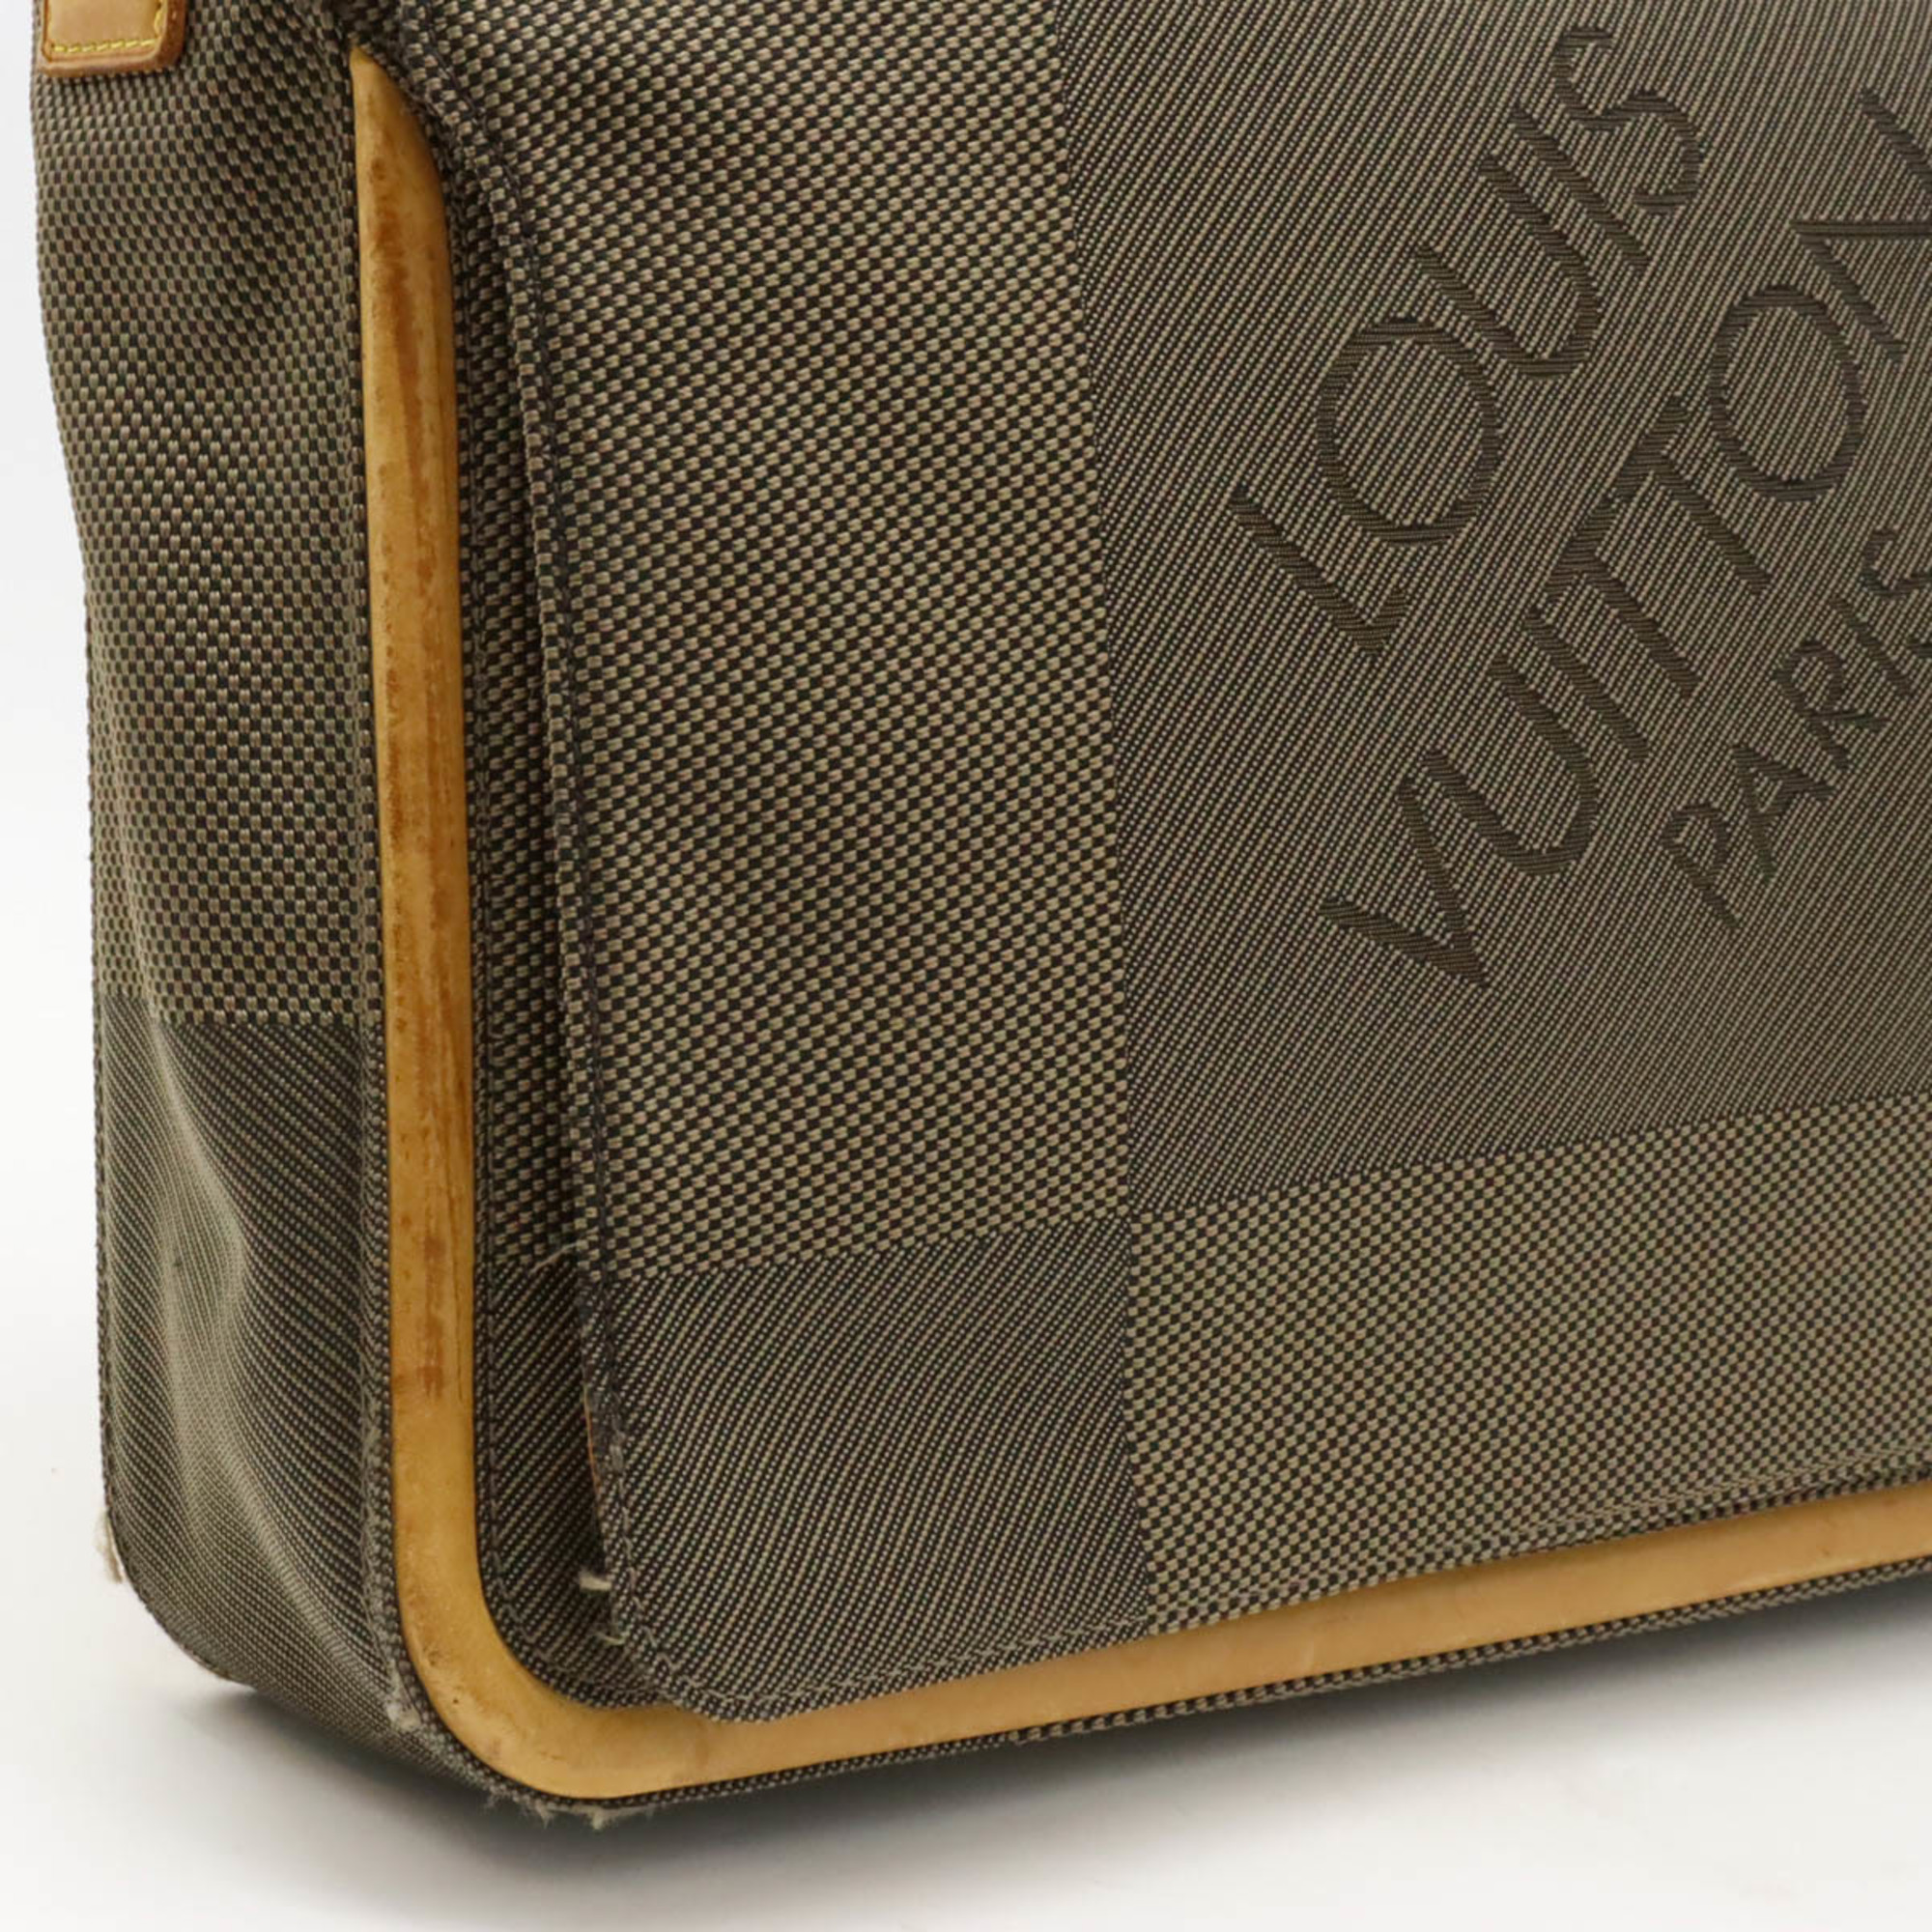 LOUIS VUITTON Damier Geant Messager Bag Shoulder Tail M93030